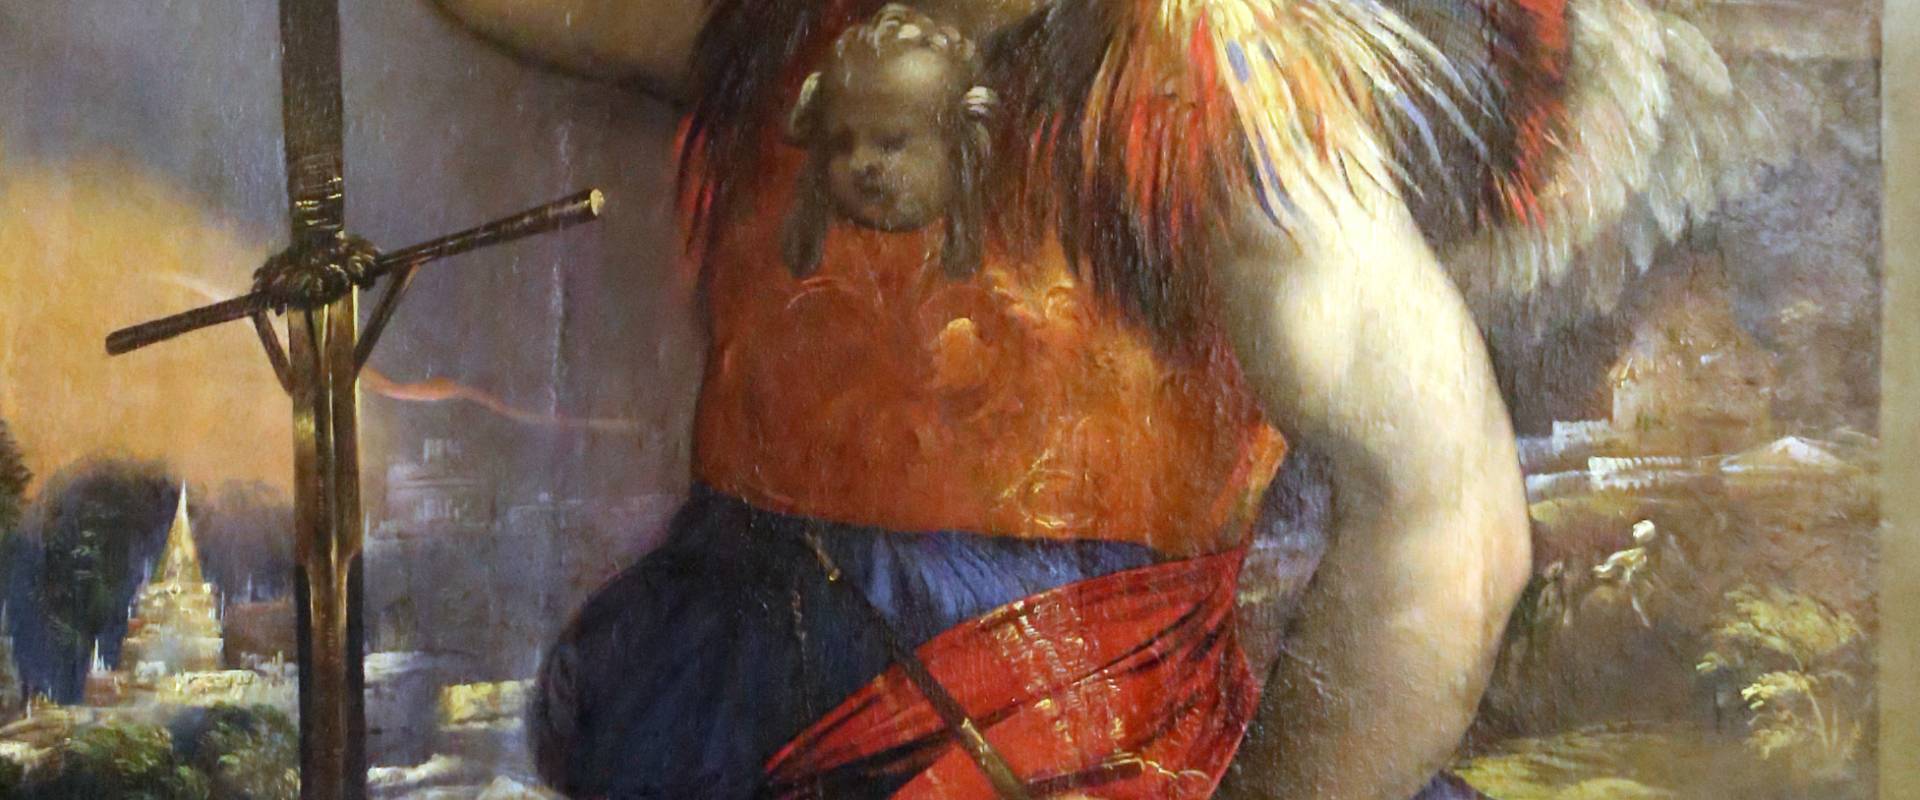 Dosso dossi, madonna col bambino tra i ss. giorgio e michele, 1518-19, 04 photo by Sailko